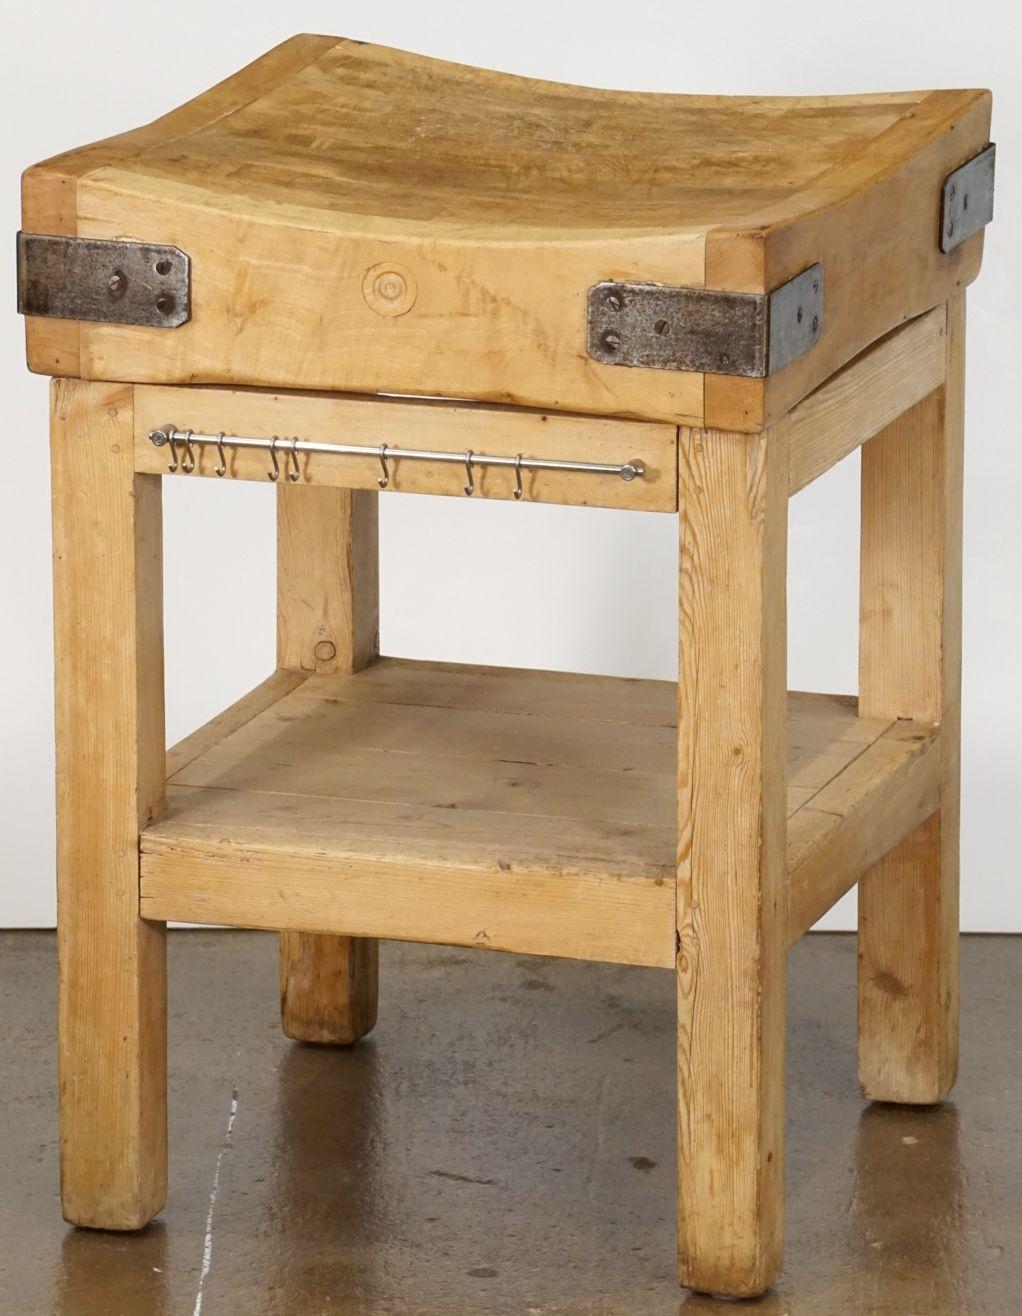 Ein hübscher, zweistöckiger Metzgerblock auf einem Ständer oder Tisch aus Kiefern- und Buchenholz aus England, mit einem großen, quadratischen, schrägen Block oder einer Platte aus eisenbeschlagenem Holz auf einem stabilen, vierbeinigen Ständer aus